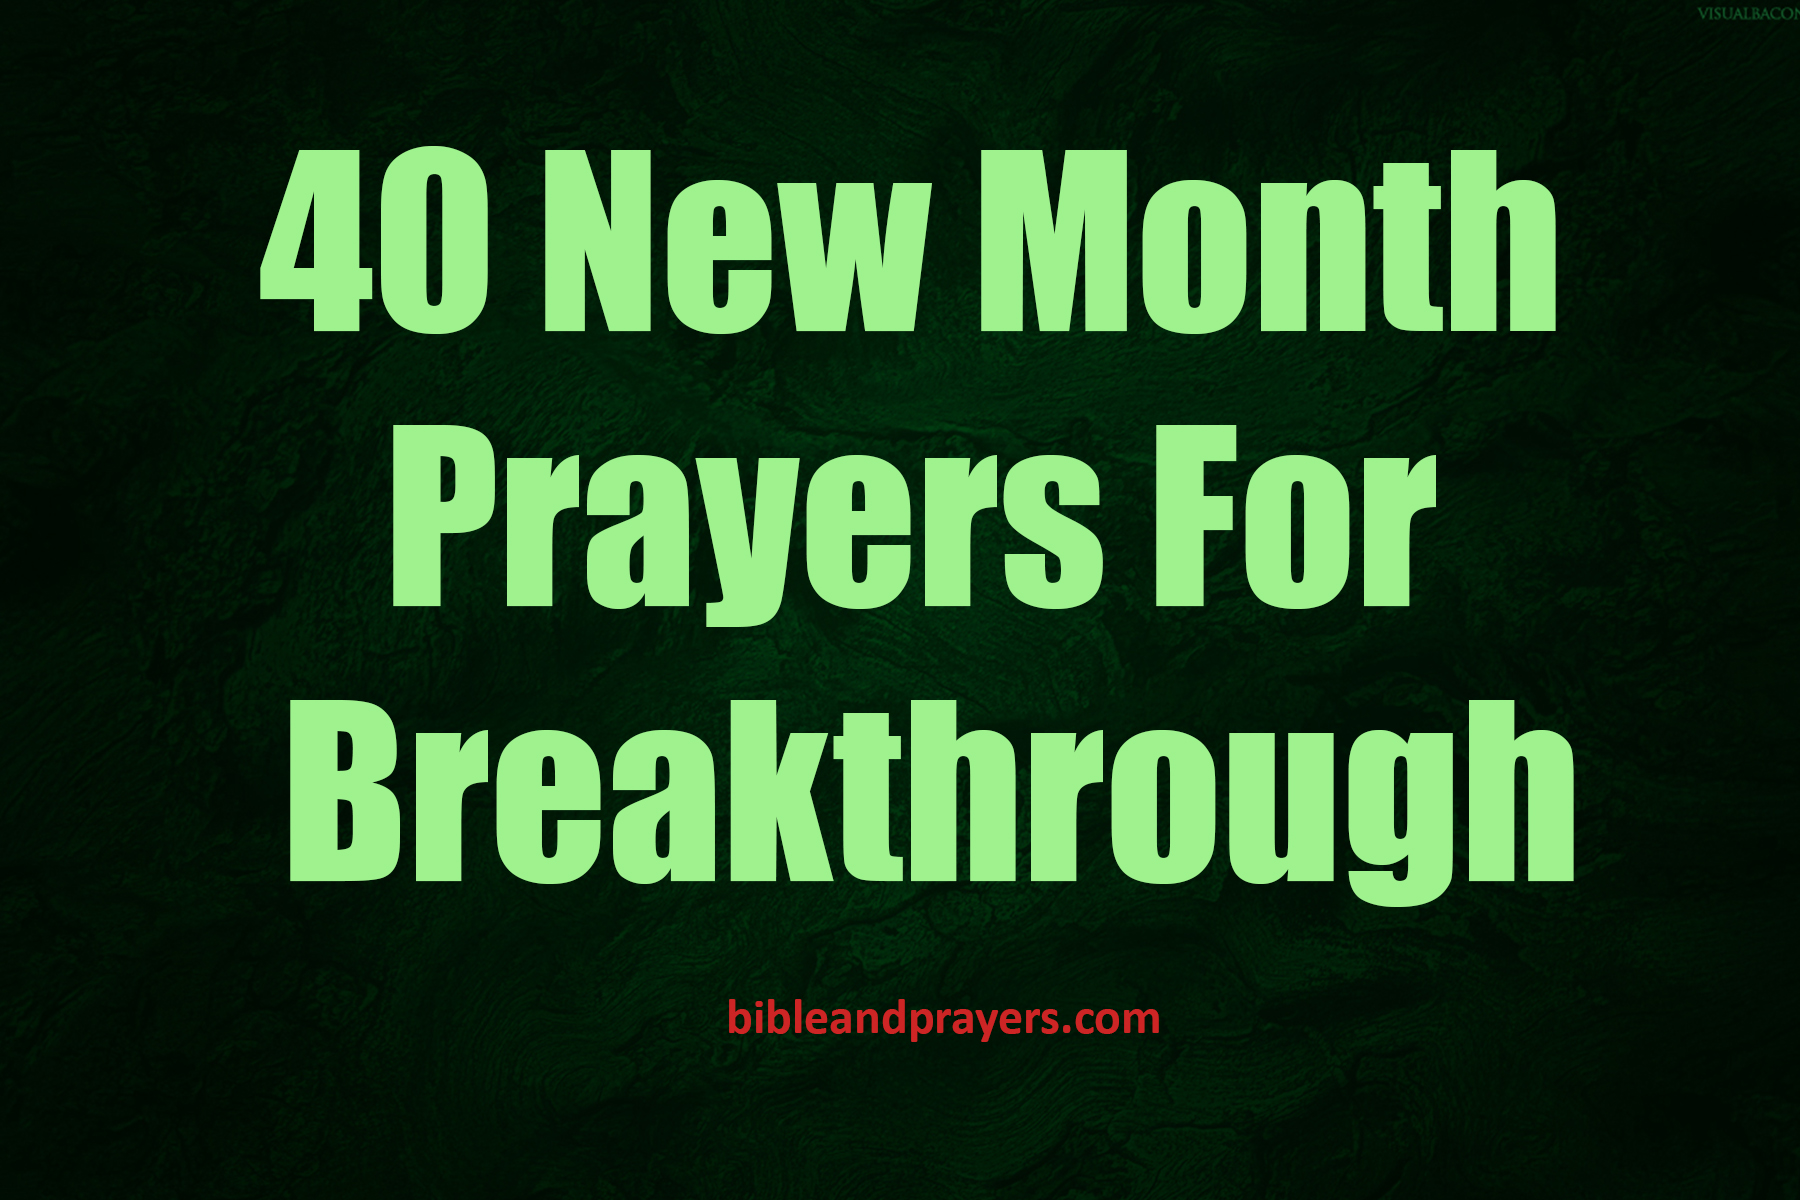 40 NEW MONTH PRAYERS FOR BREAKTHROUGH